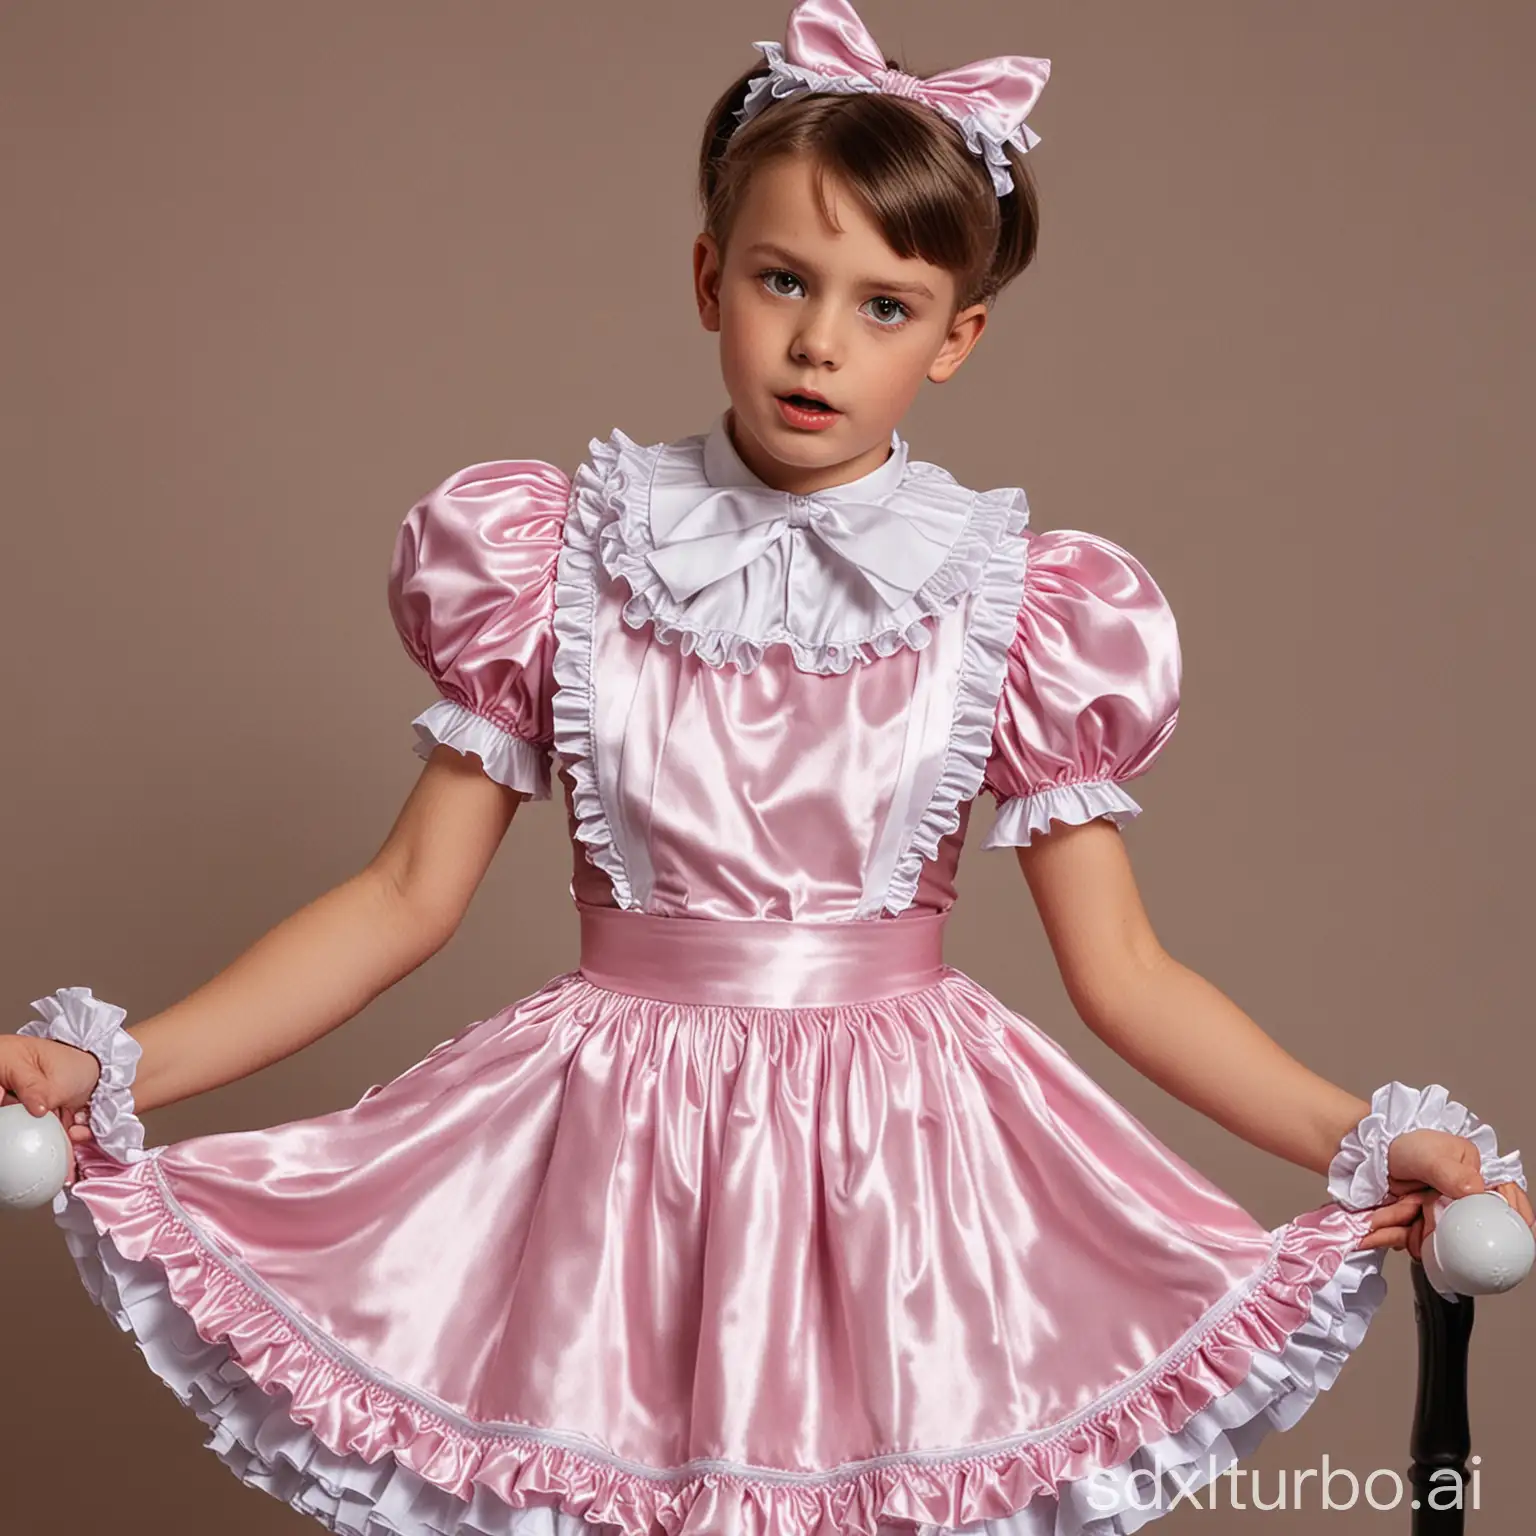 Boy in a satin sissy maid dress